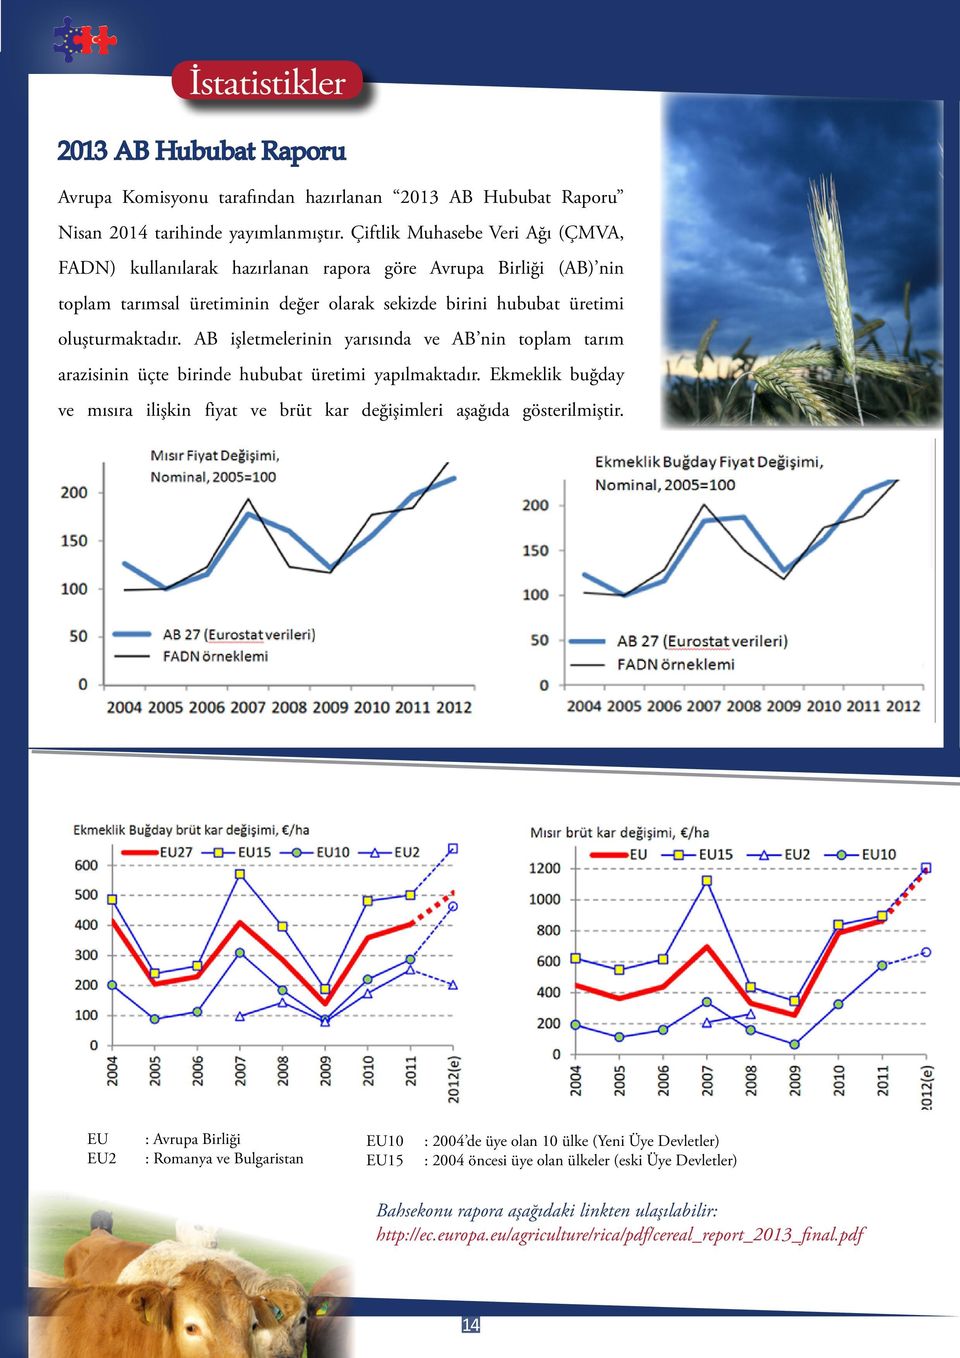 AB işletmelerinin yarısında ve AB nin toplam tarım arazisinin üçte birinde hububat üretimi yapılmaktadır. Ekmeklik buğday ve mısıra ilişkin fiyat ve brüt kar değişimleri aşağıda gösterilmiştir.